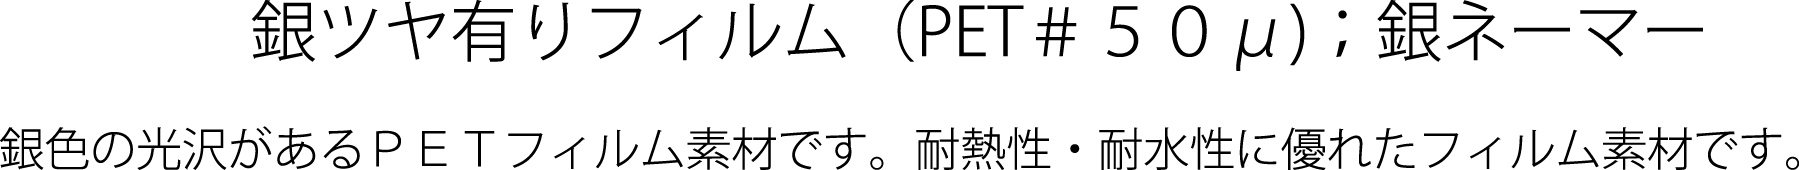 銀ツヤ有り(PET#50?)